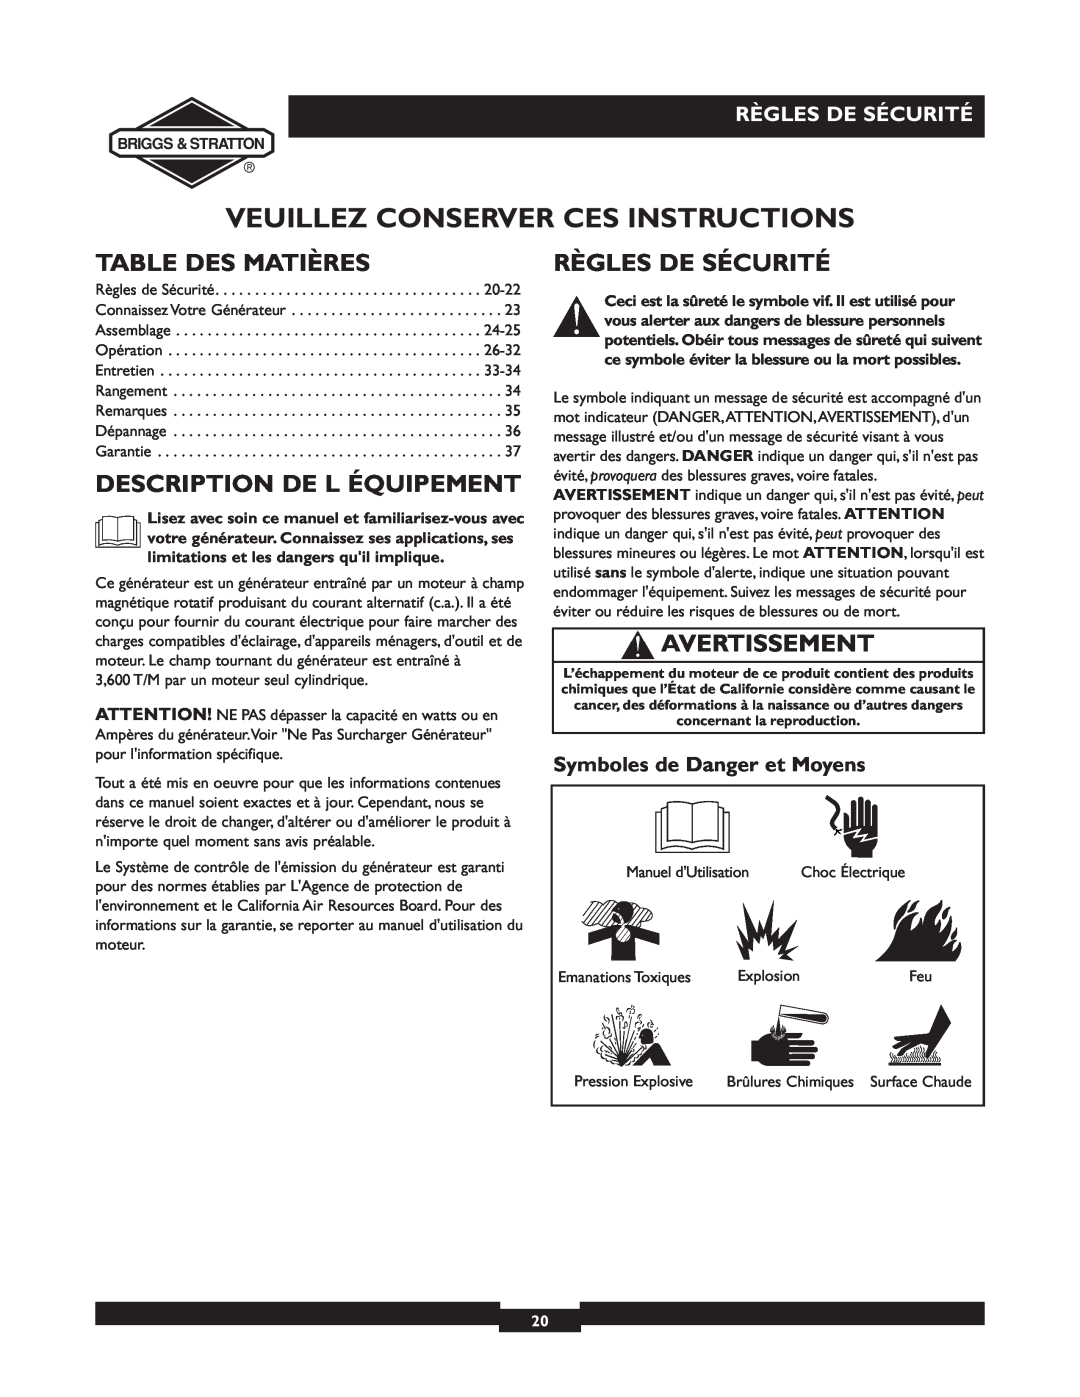 Briggs & Stratton 01894-1 manual Veuillez Conserver Ces Instructions, Table Des Matières, Description De L Équipement 